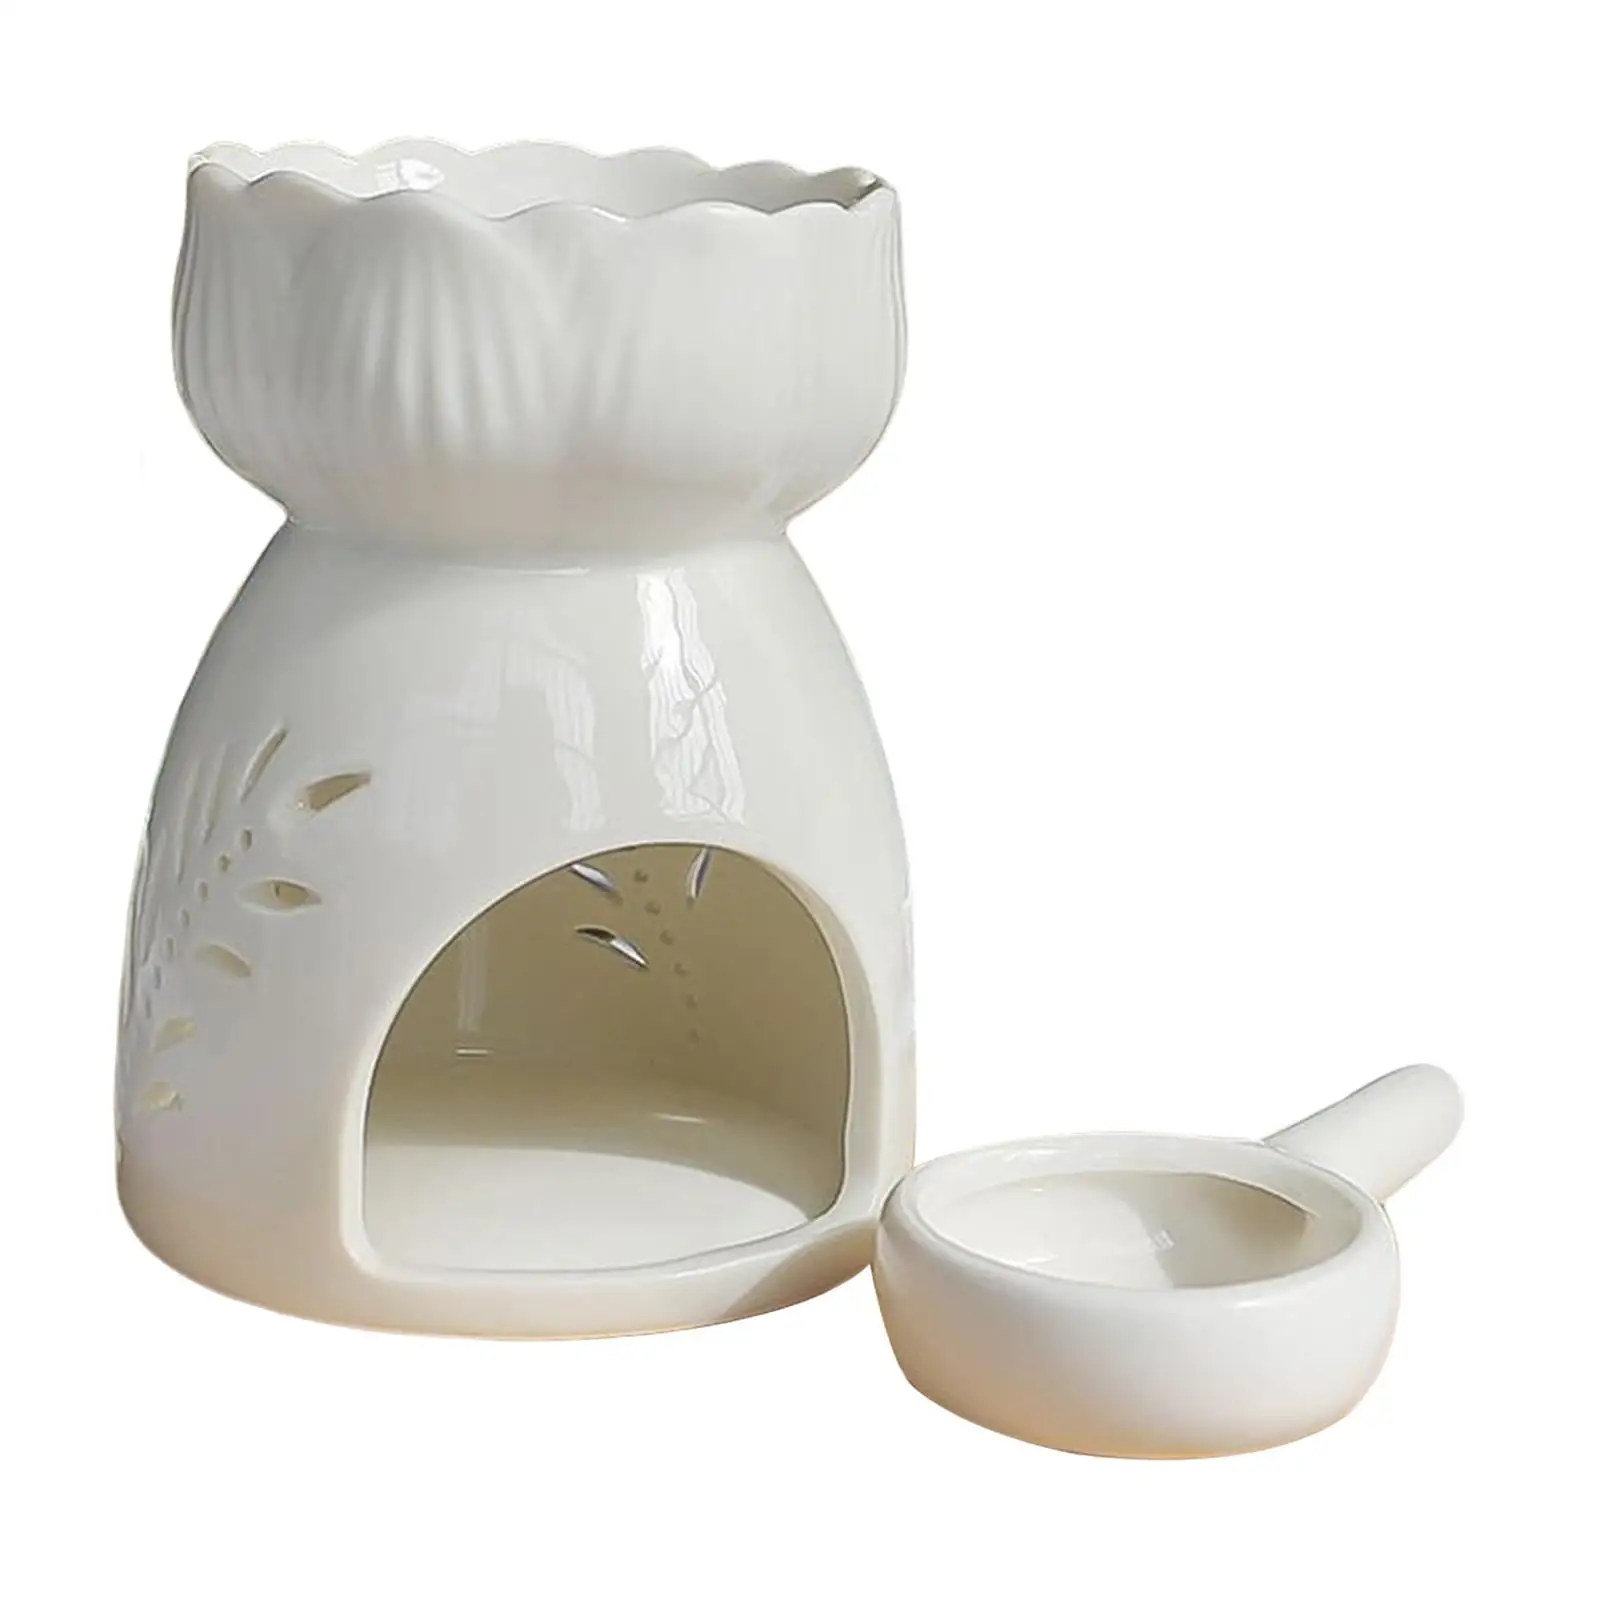 Portable Ceramic Tealight Holder Elegant Burner Essential Oil Burner Lamp for Wedding Indoor Home Decoration